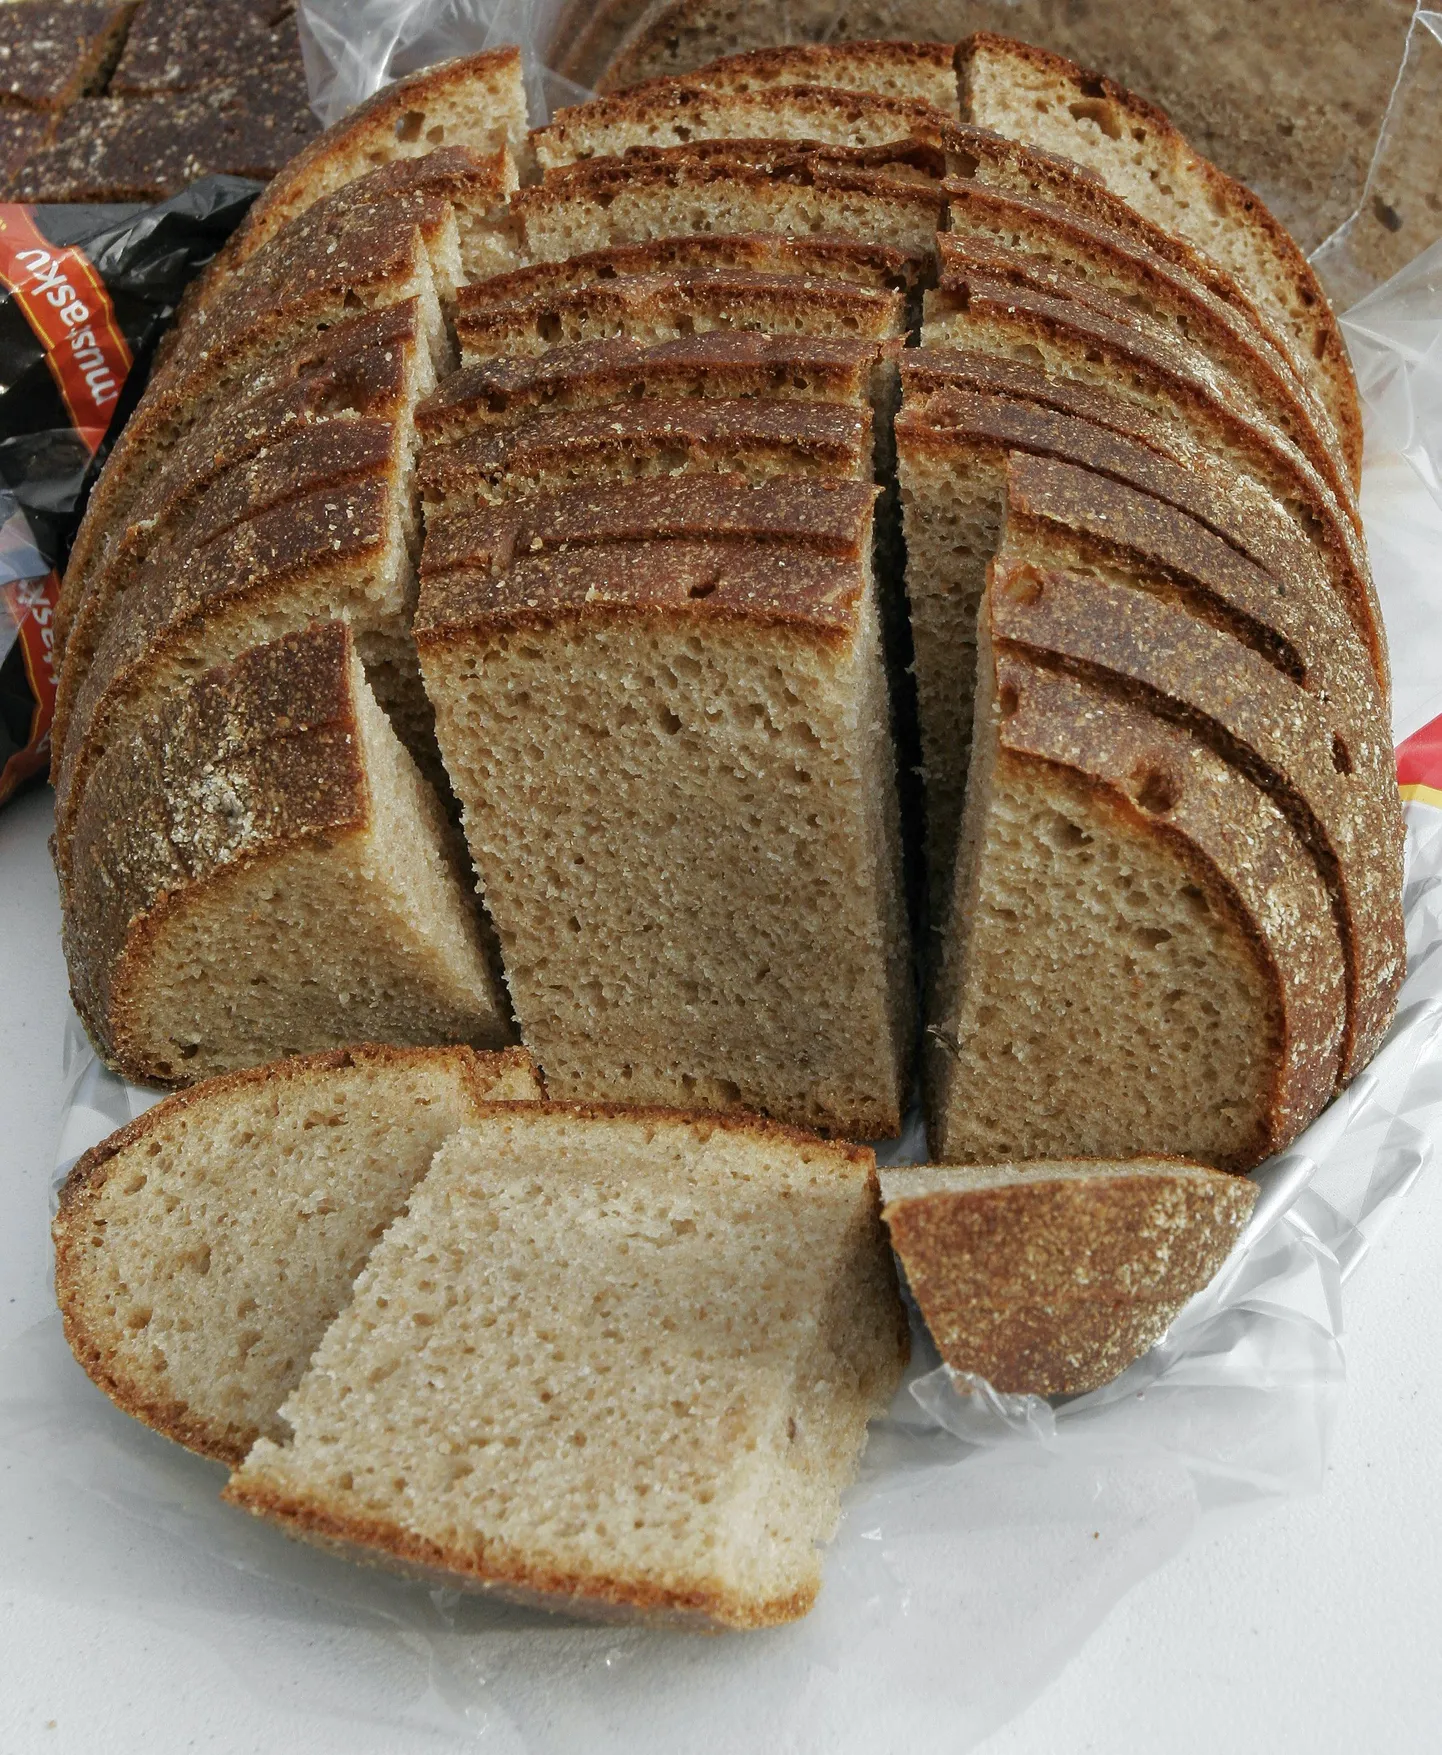 Pildil olev leib on illustratiivse tähendusega ega ole Evelin Ilvesega seotud.